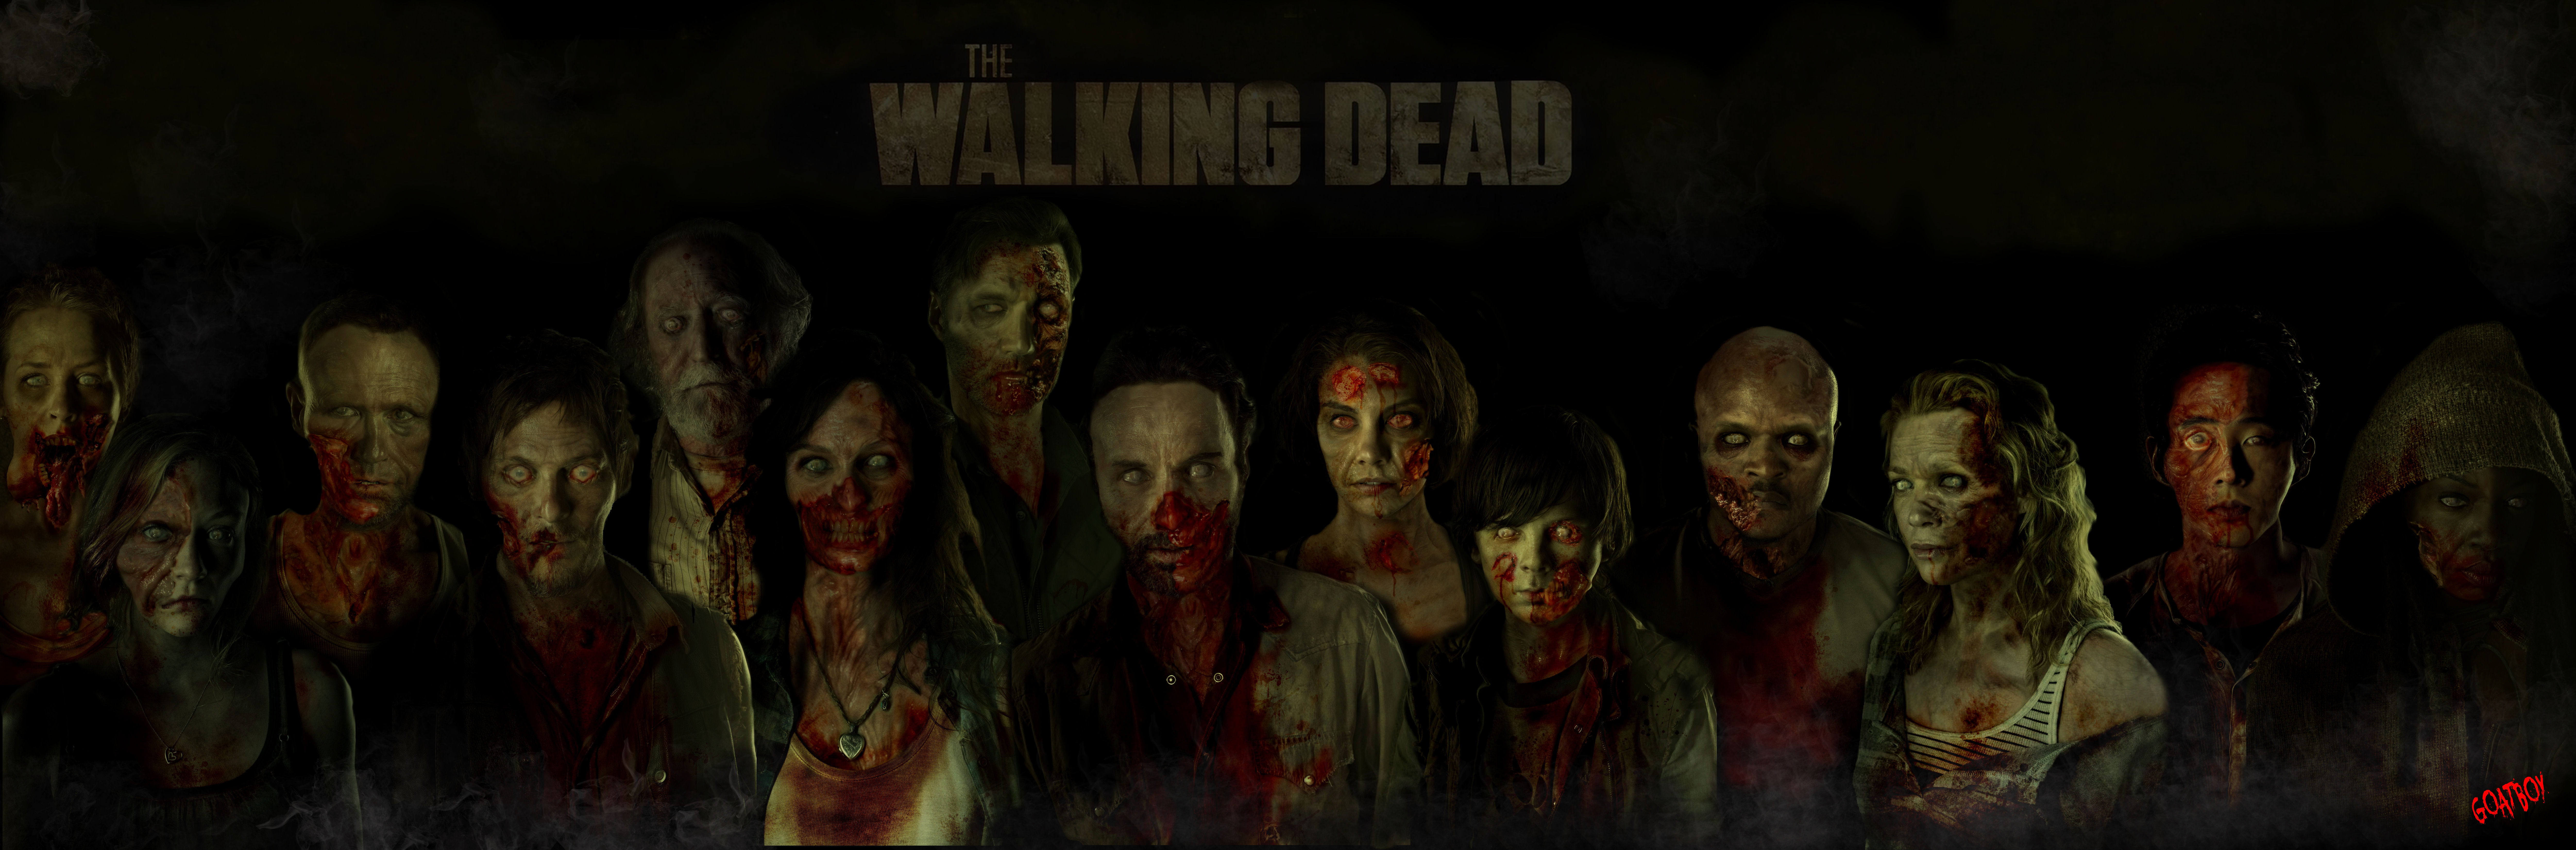 The-walking-dead-zombie-cast-wallpaper